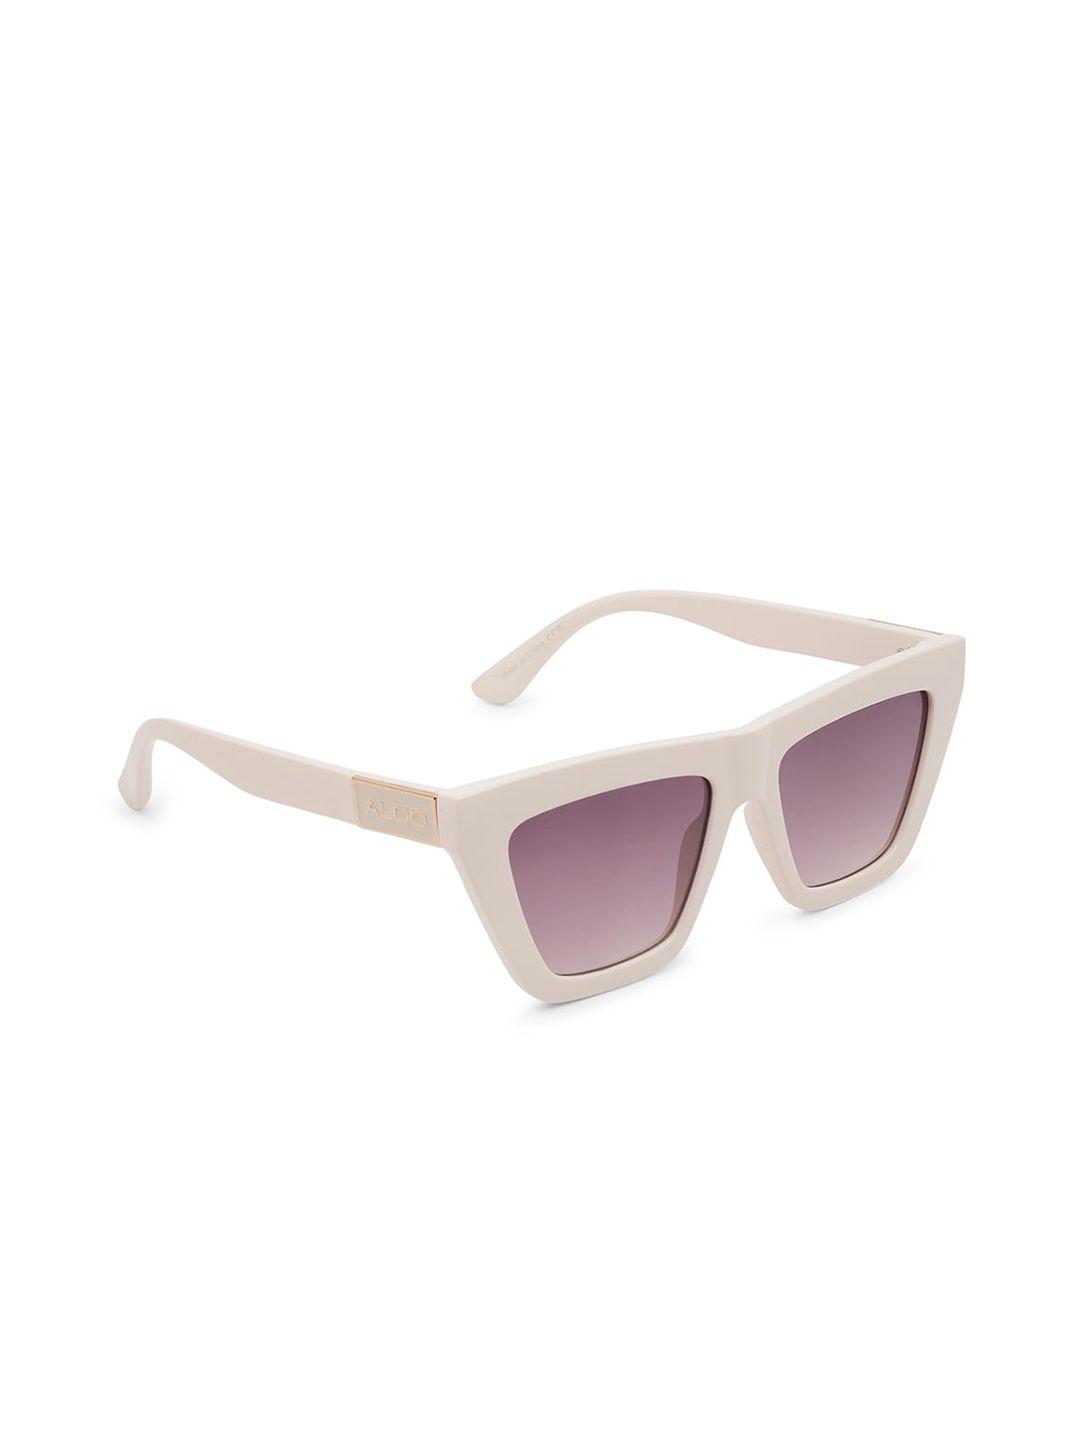 aldo-women-square-sunglasses-galaleveth102